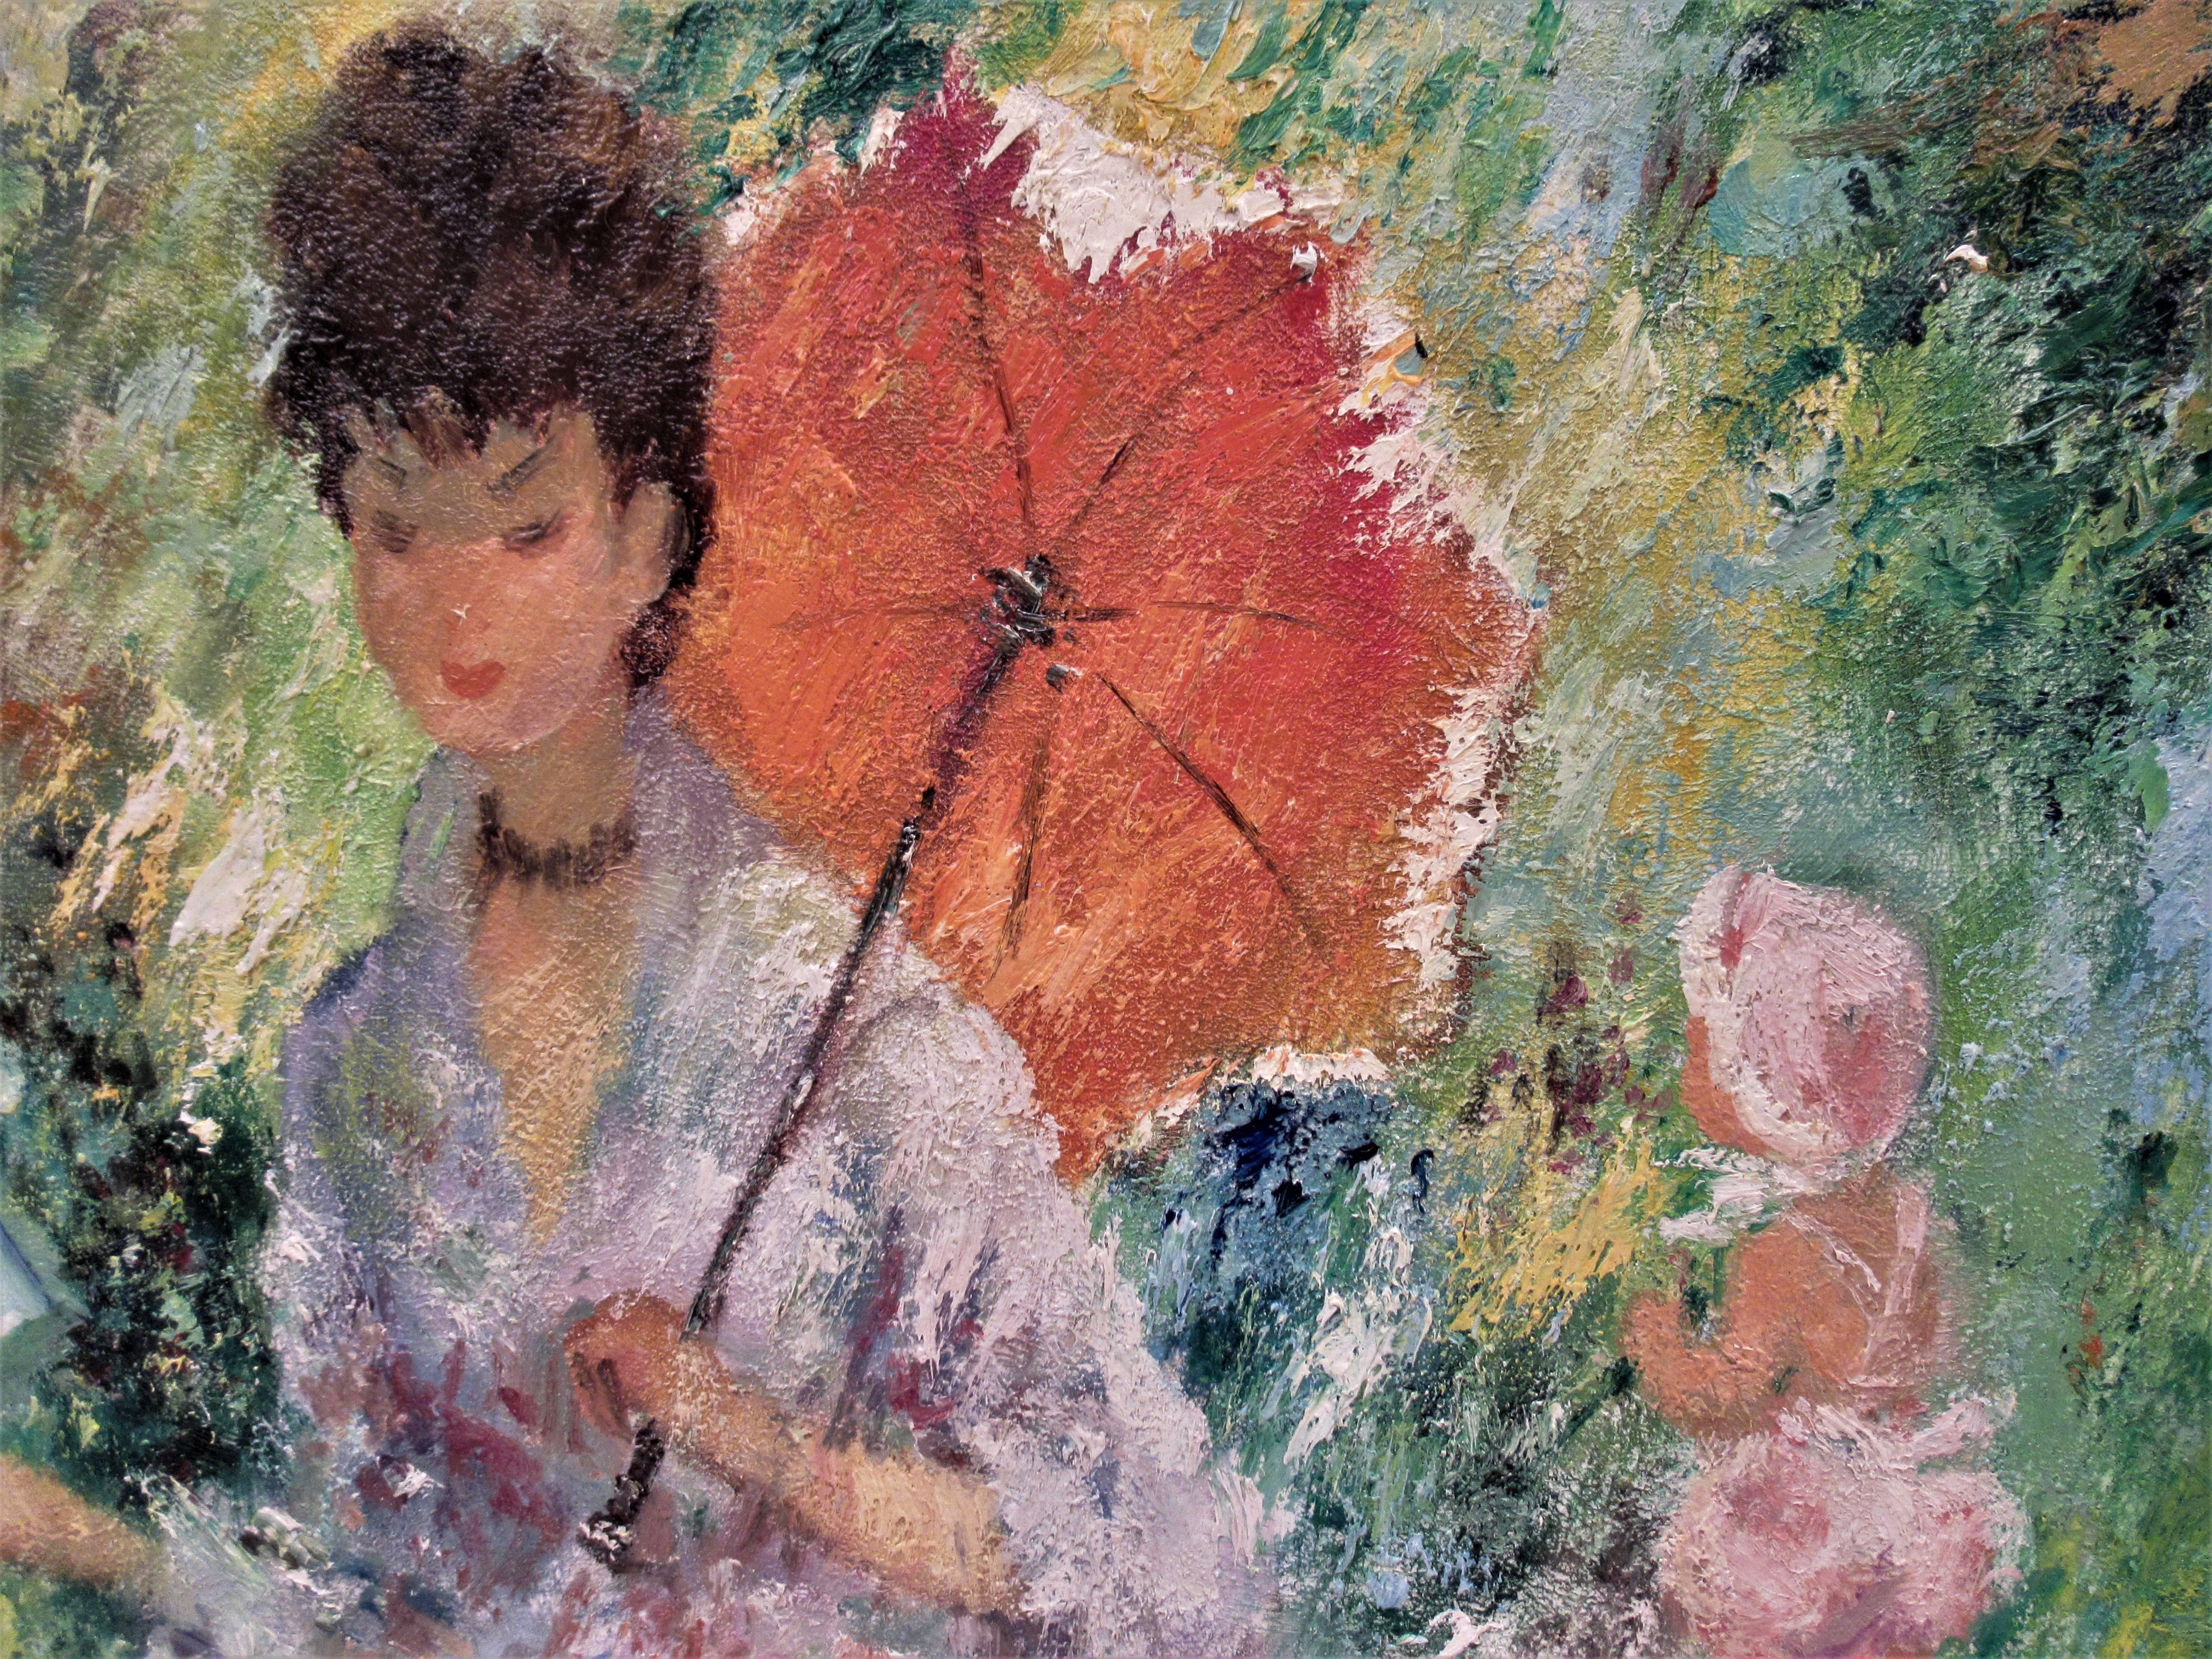 Femme avec Umbrella lisant un livre - Marron Landscape Painting par Marguerite Aers